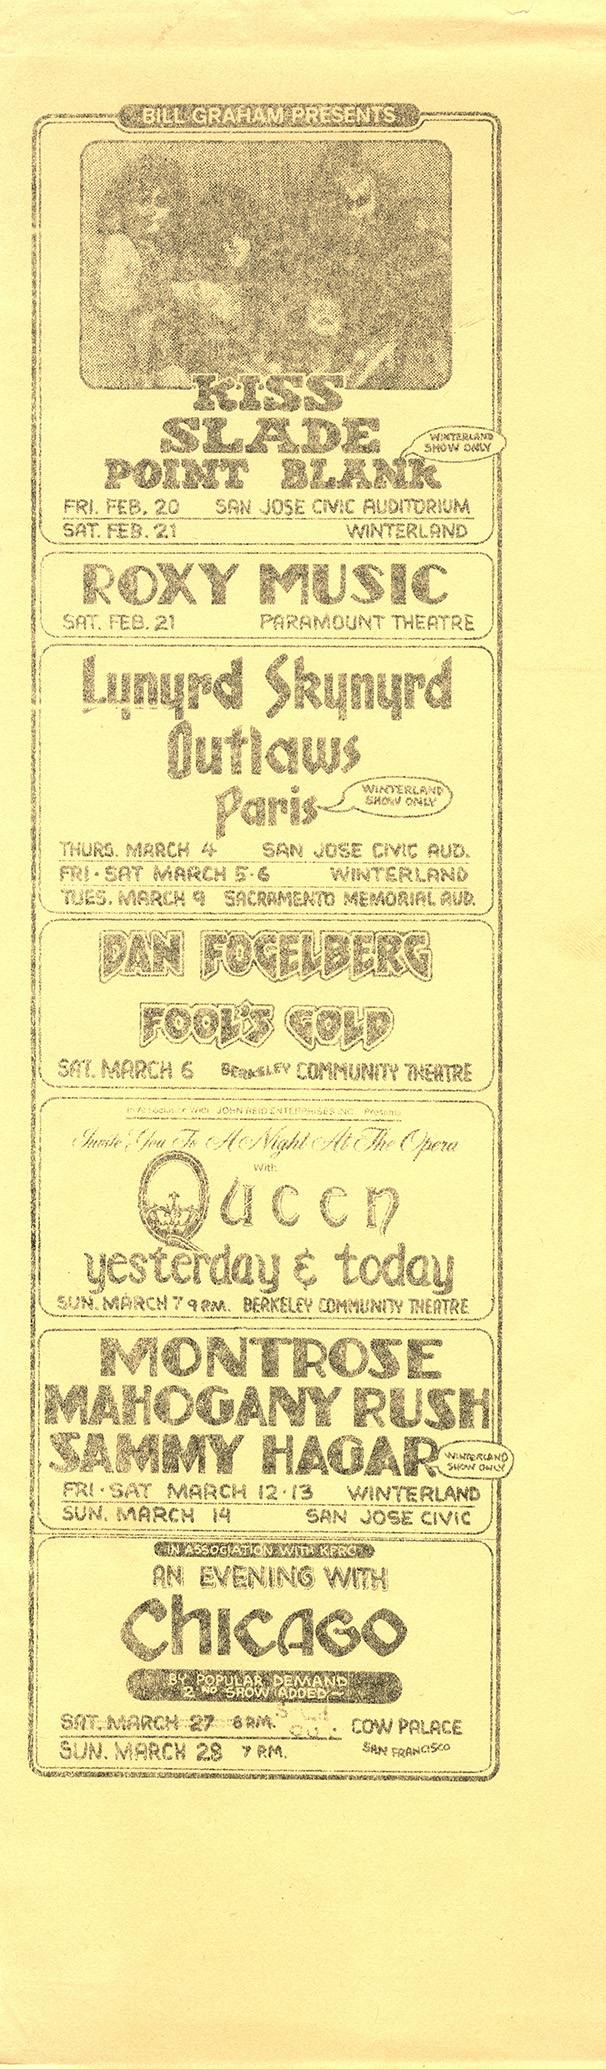 Queen in Berkeley on 07.03.1976 - Randy Tuten's flyer